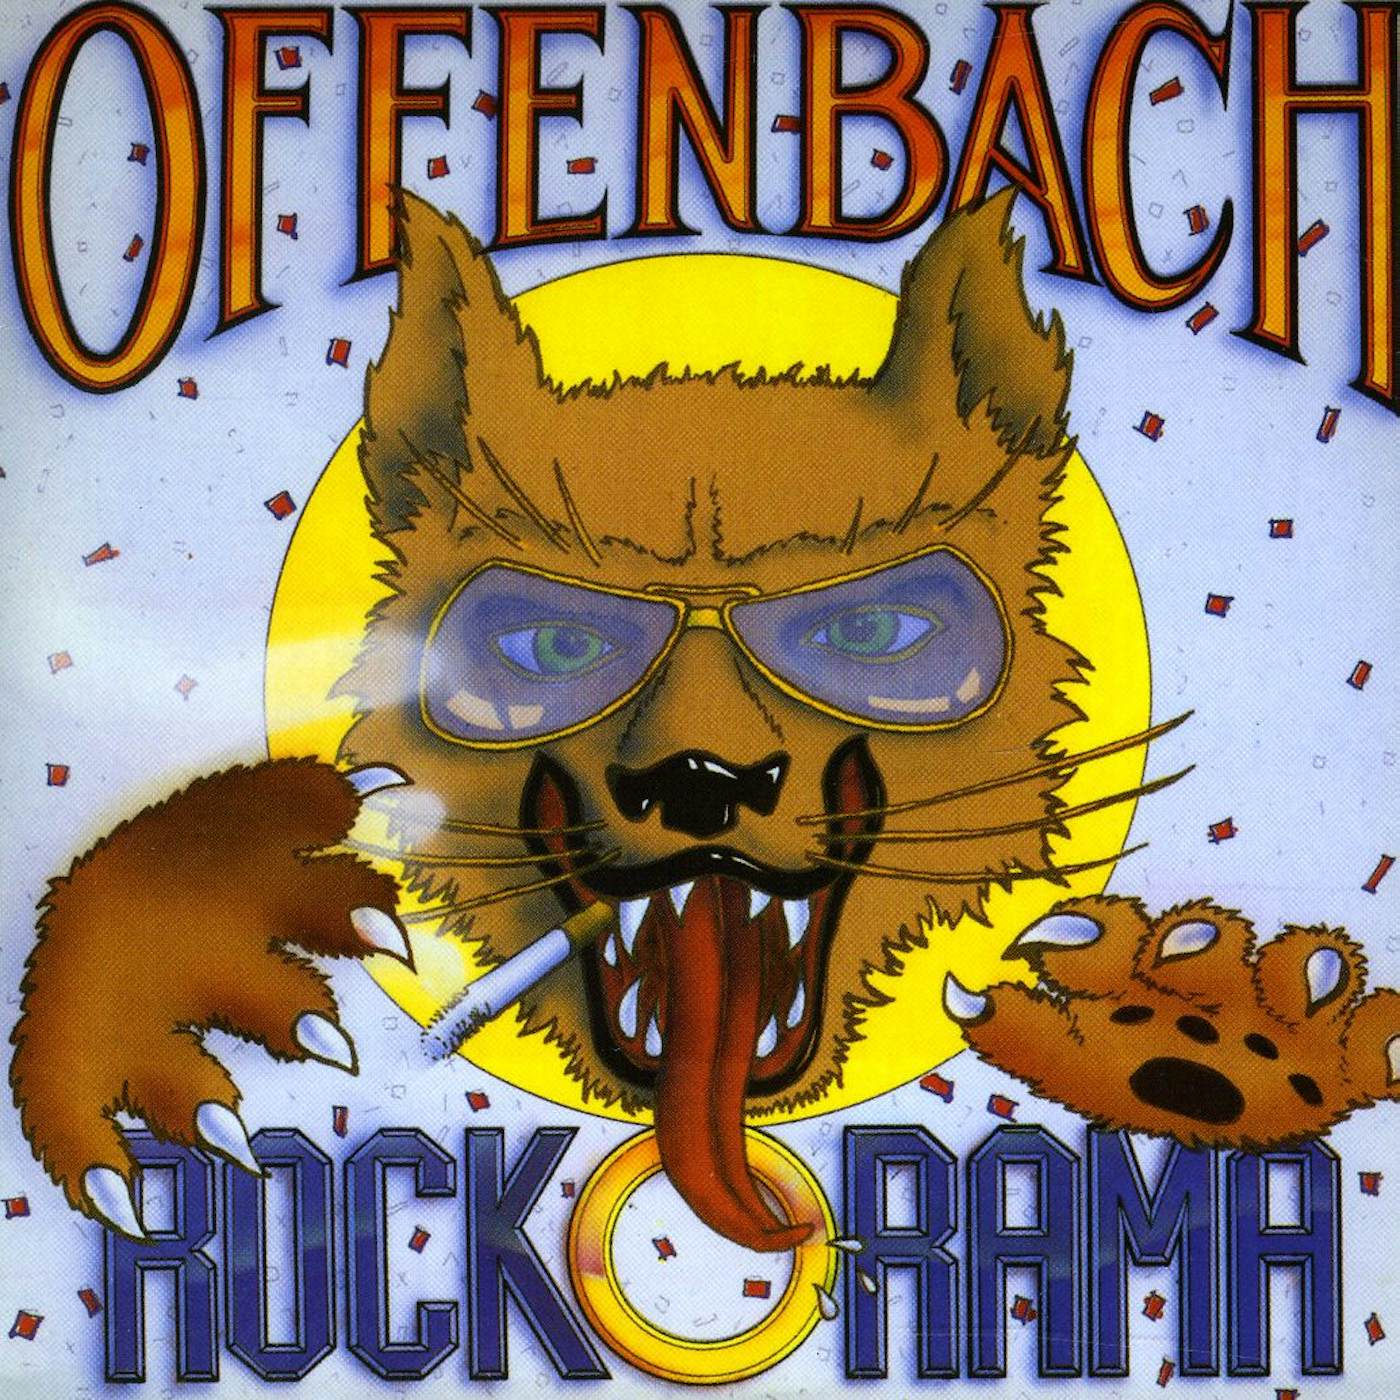 Offenbach ROCK-O-RAMA CD